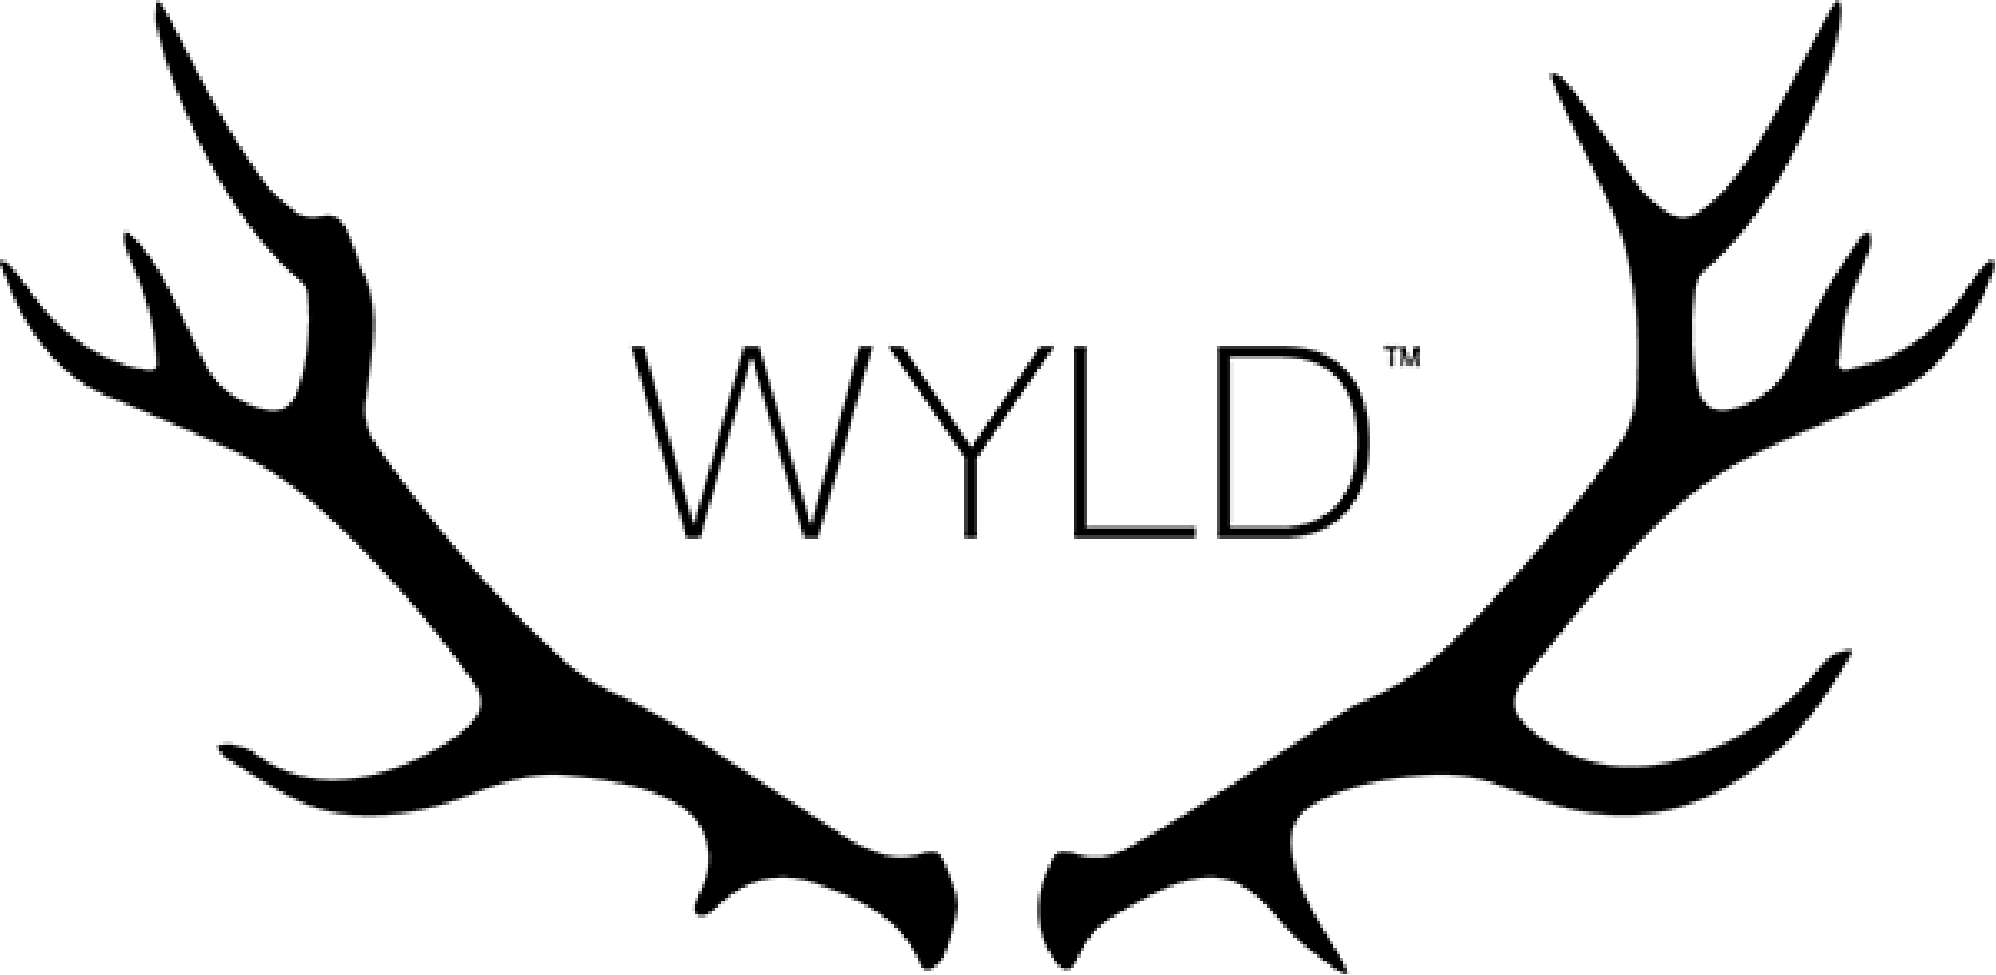 WyldOG logo